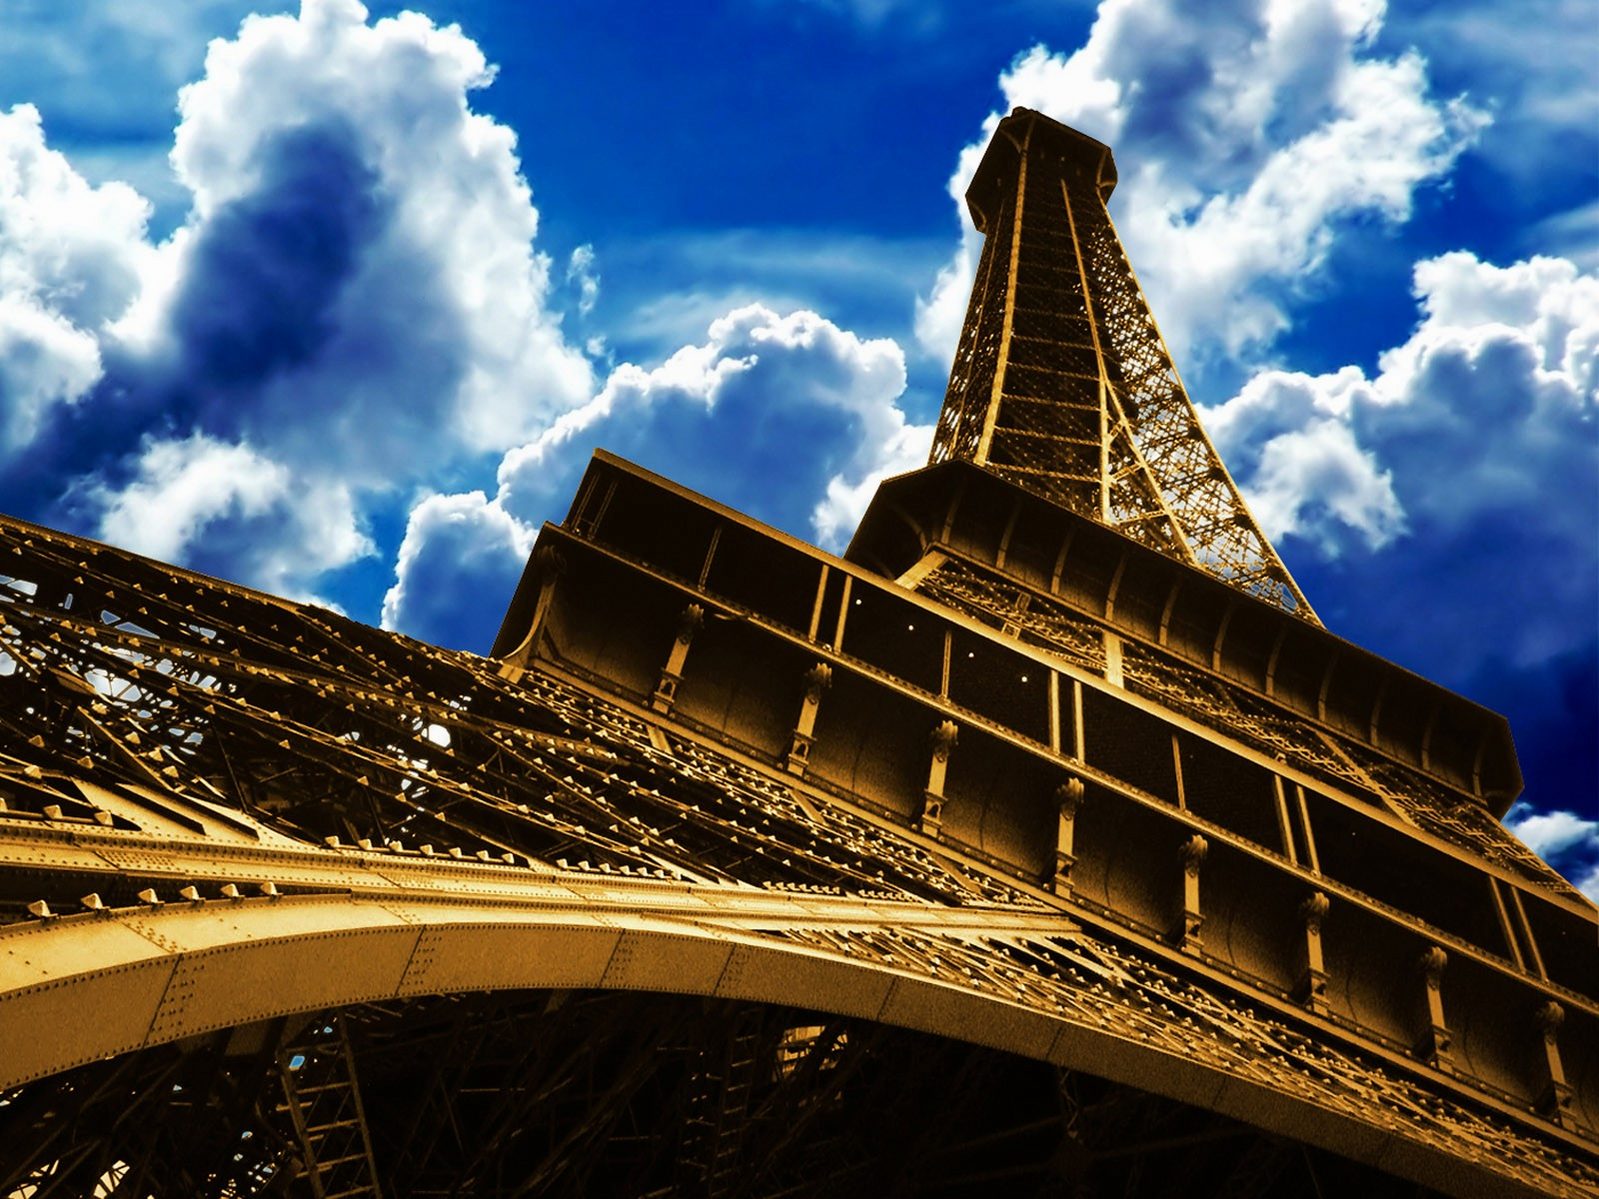 Fond d'ecran Tour Eiffel